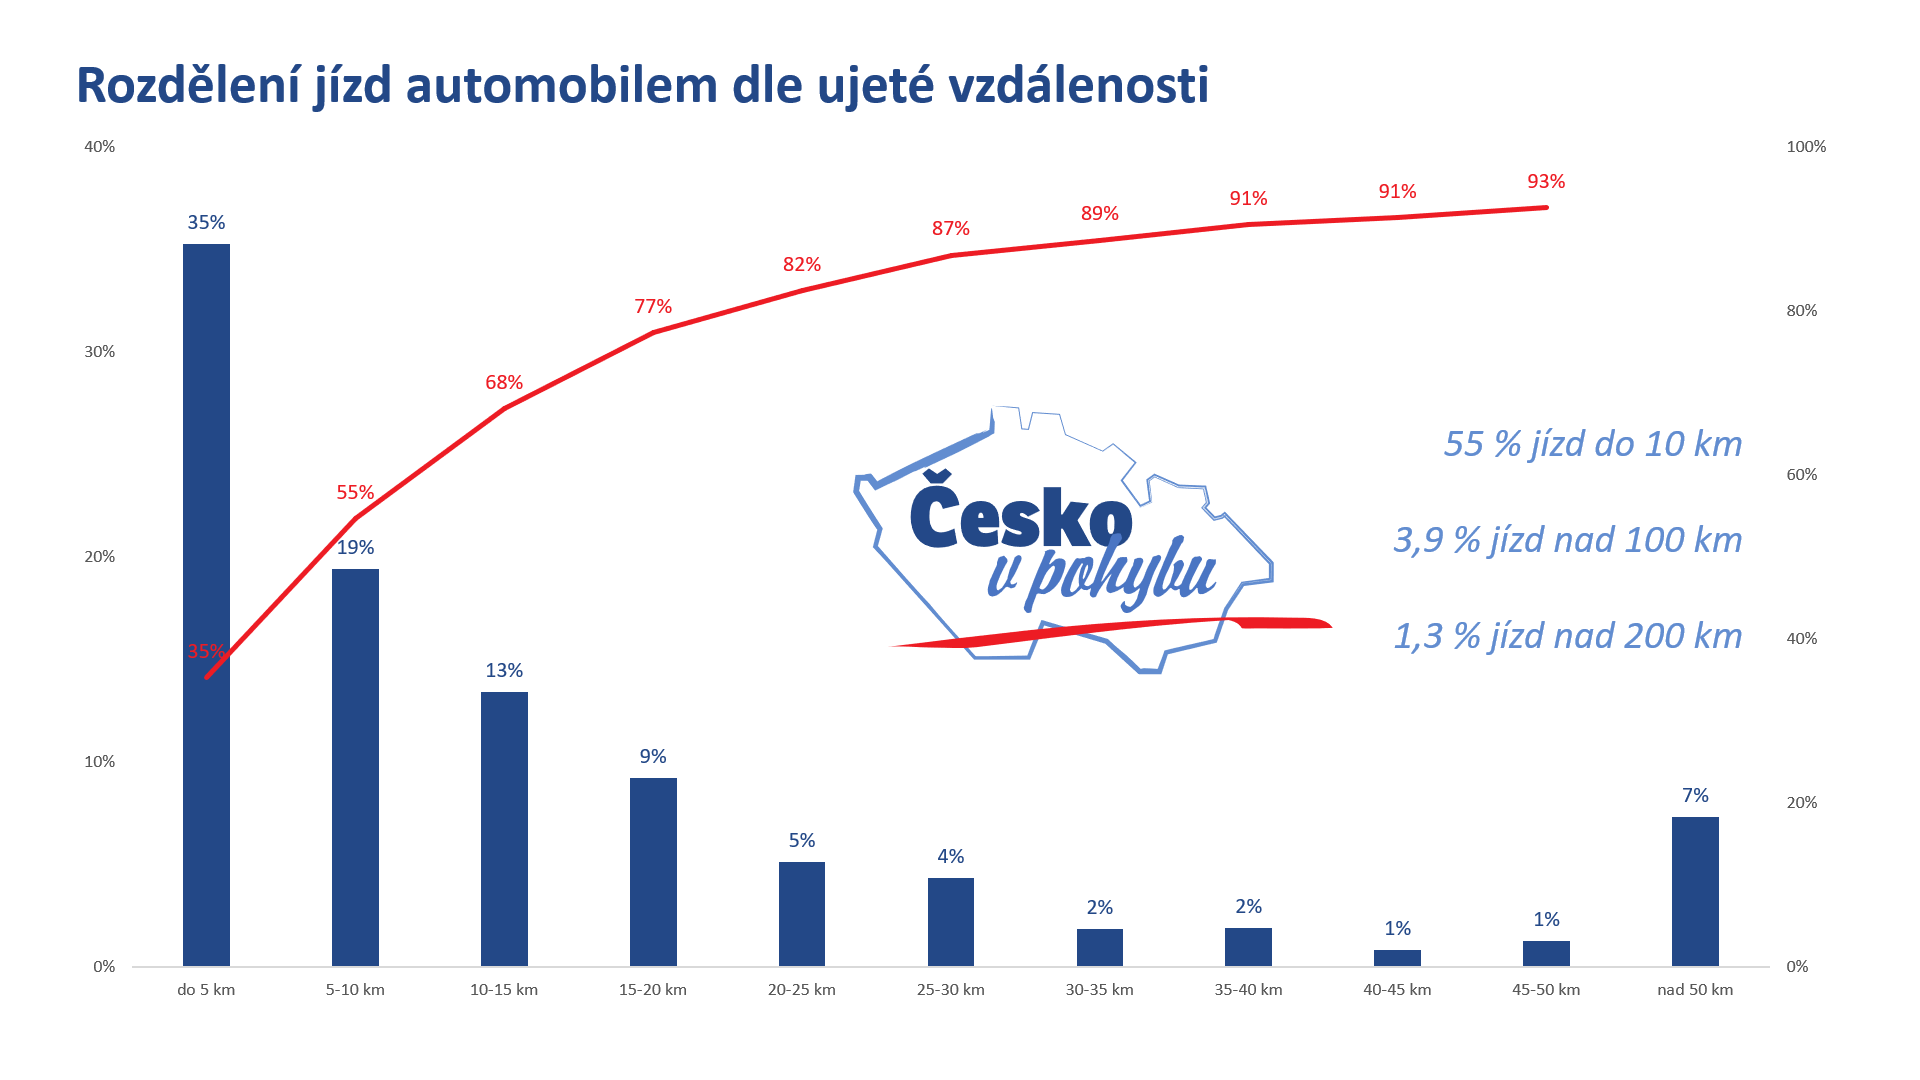 Article: Rozvoj elektromobility v ČR